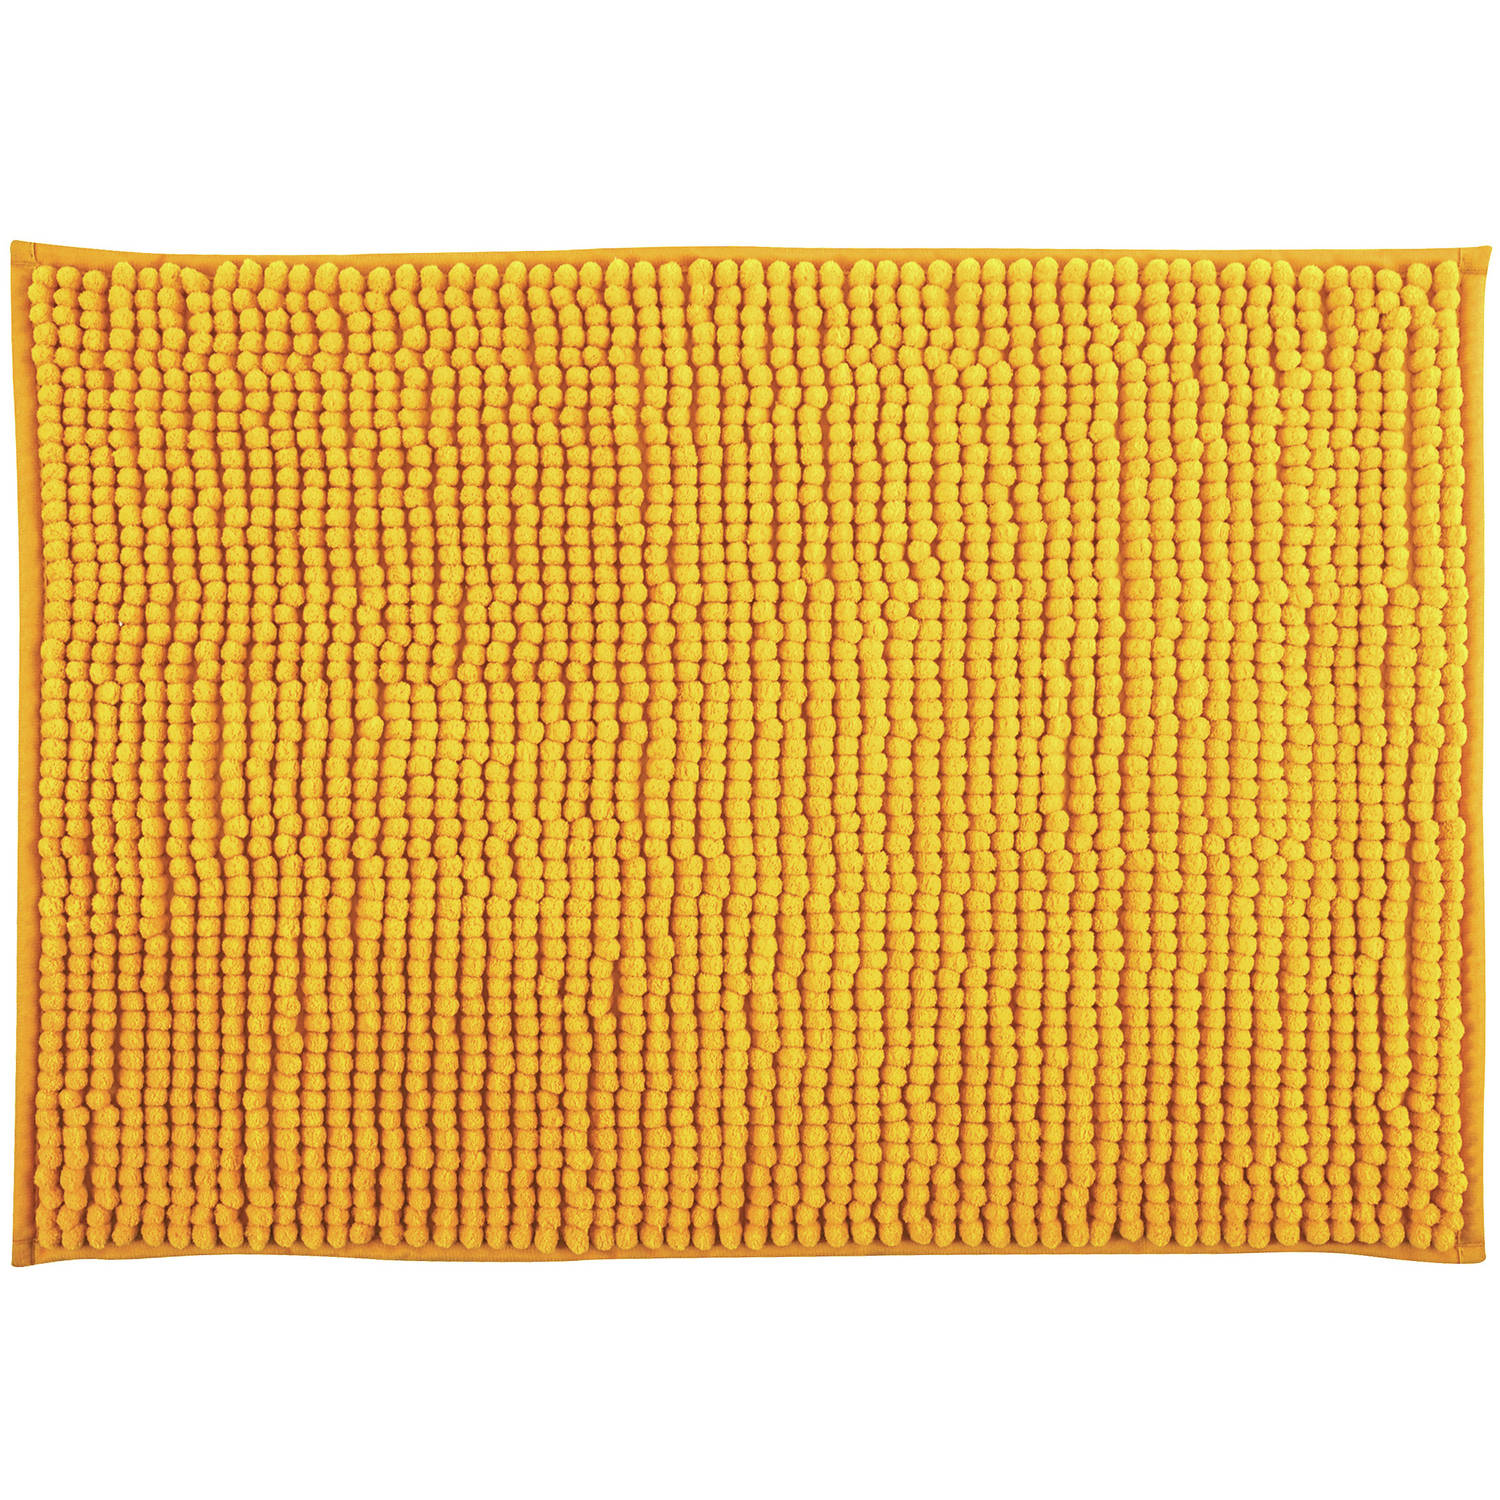 MSV Badkamerkleed/badmat - kleedje voor op de vloer - saffraan geel - 60 x 90 cm - Microvezel - anti-slip